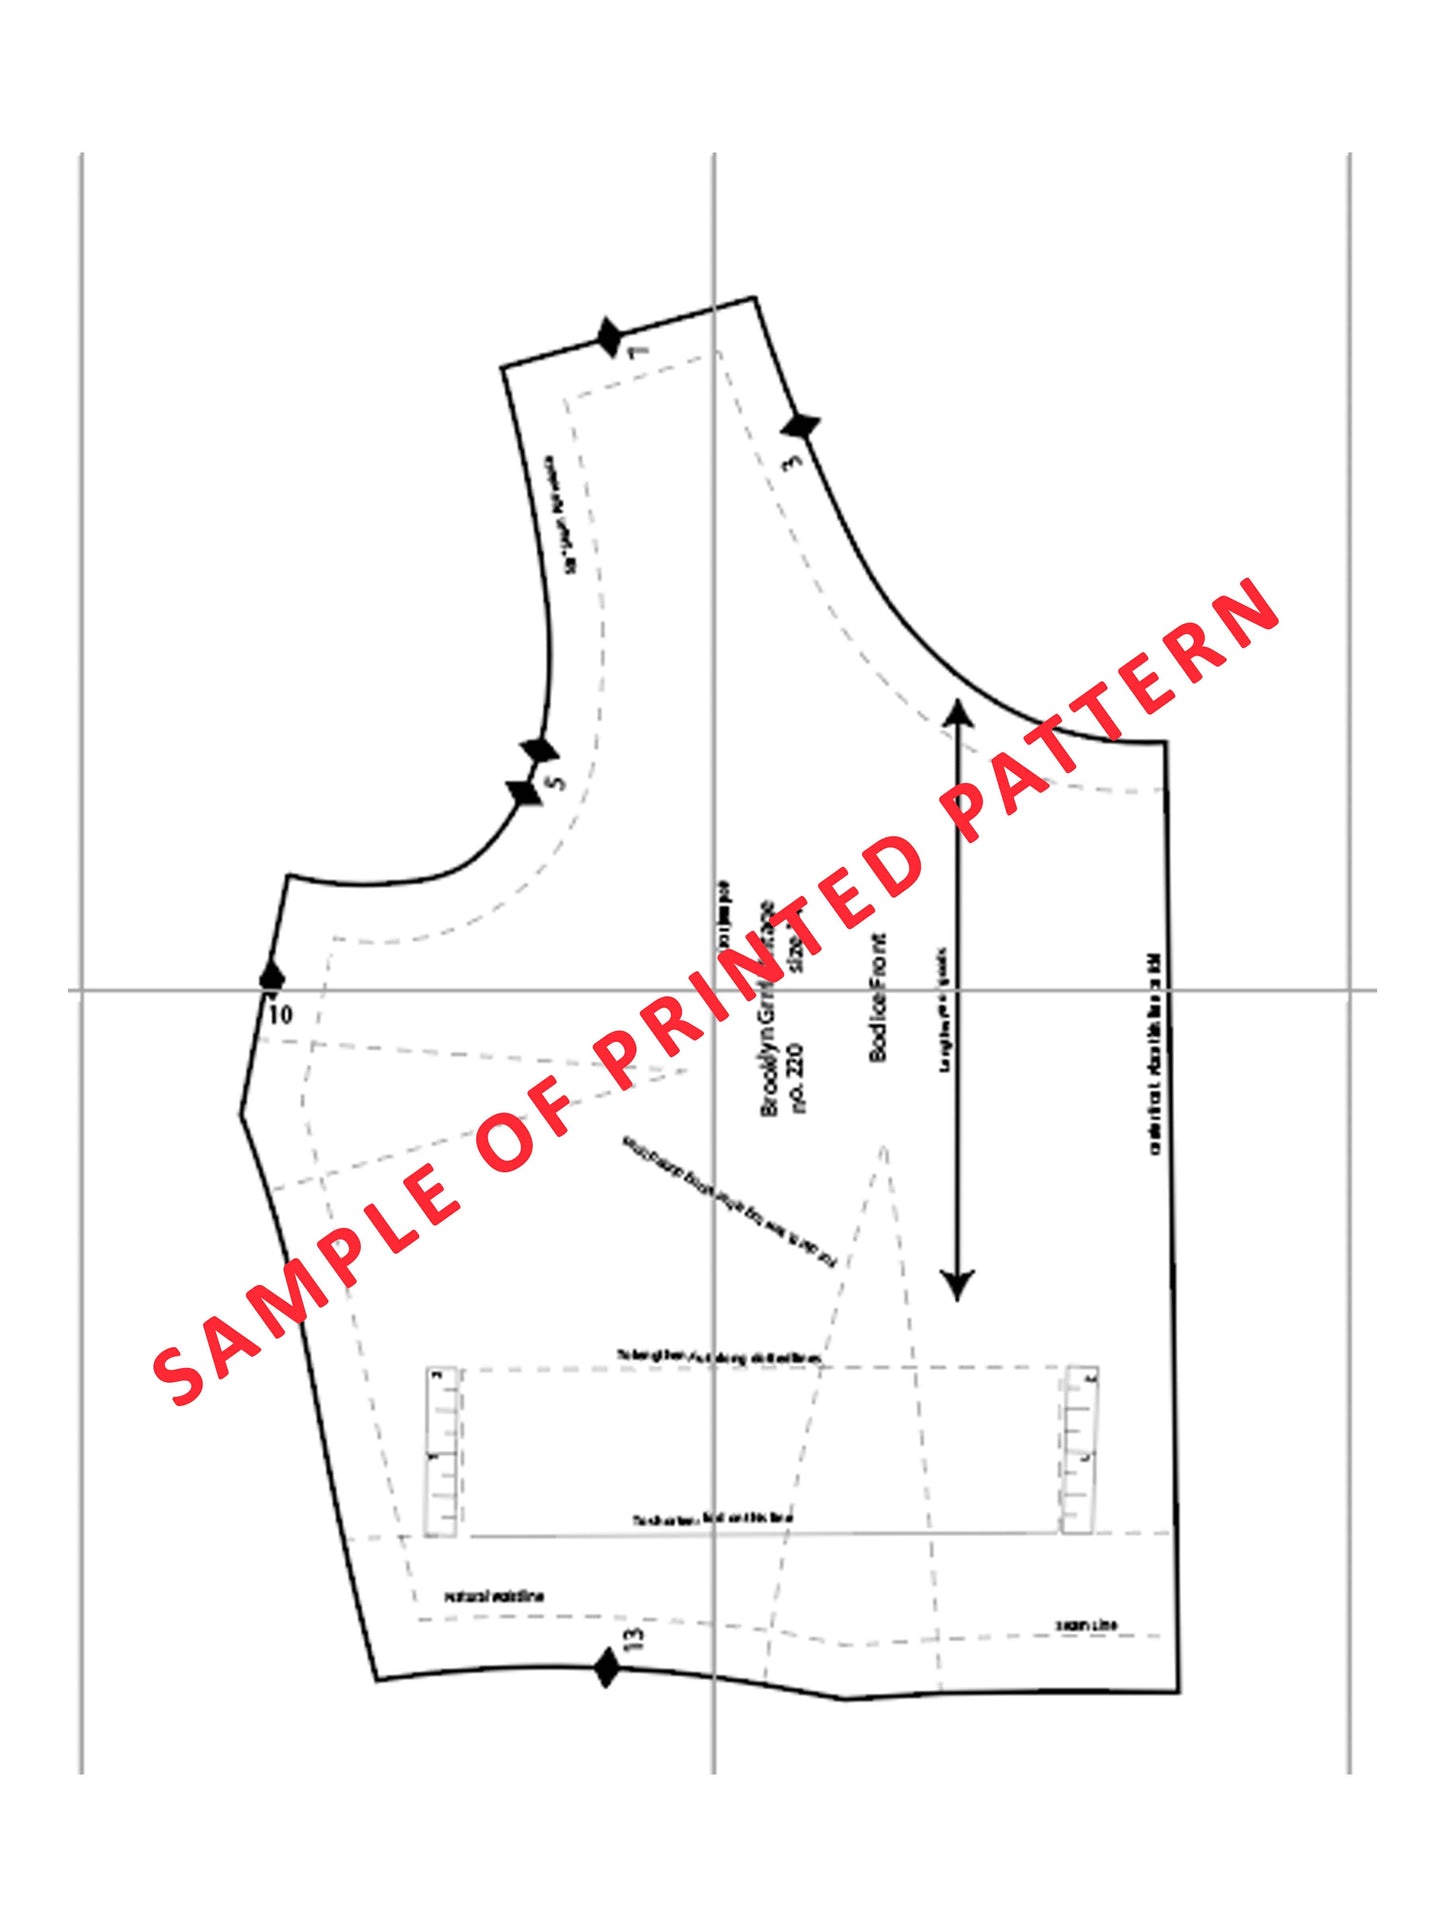 PDF Pattern - 1940s Shorts / Waist 28